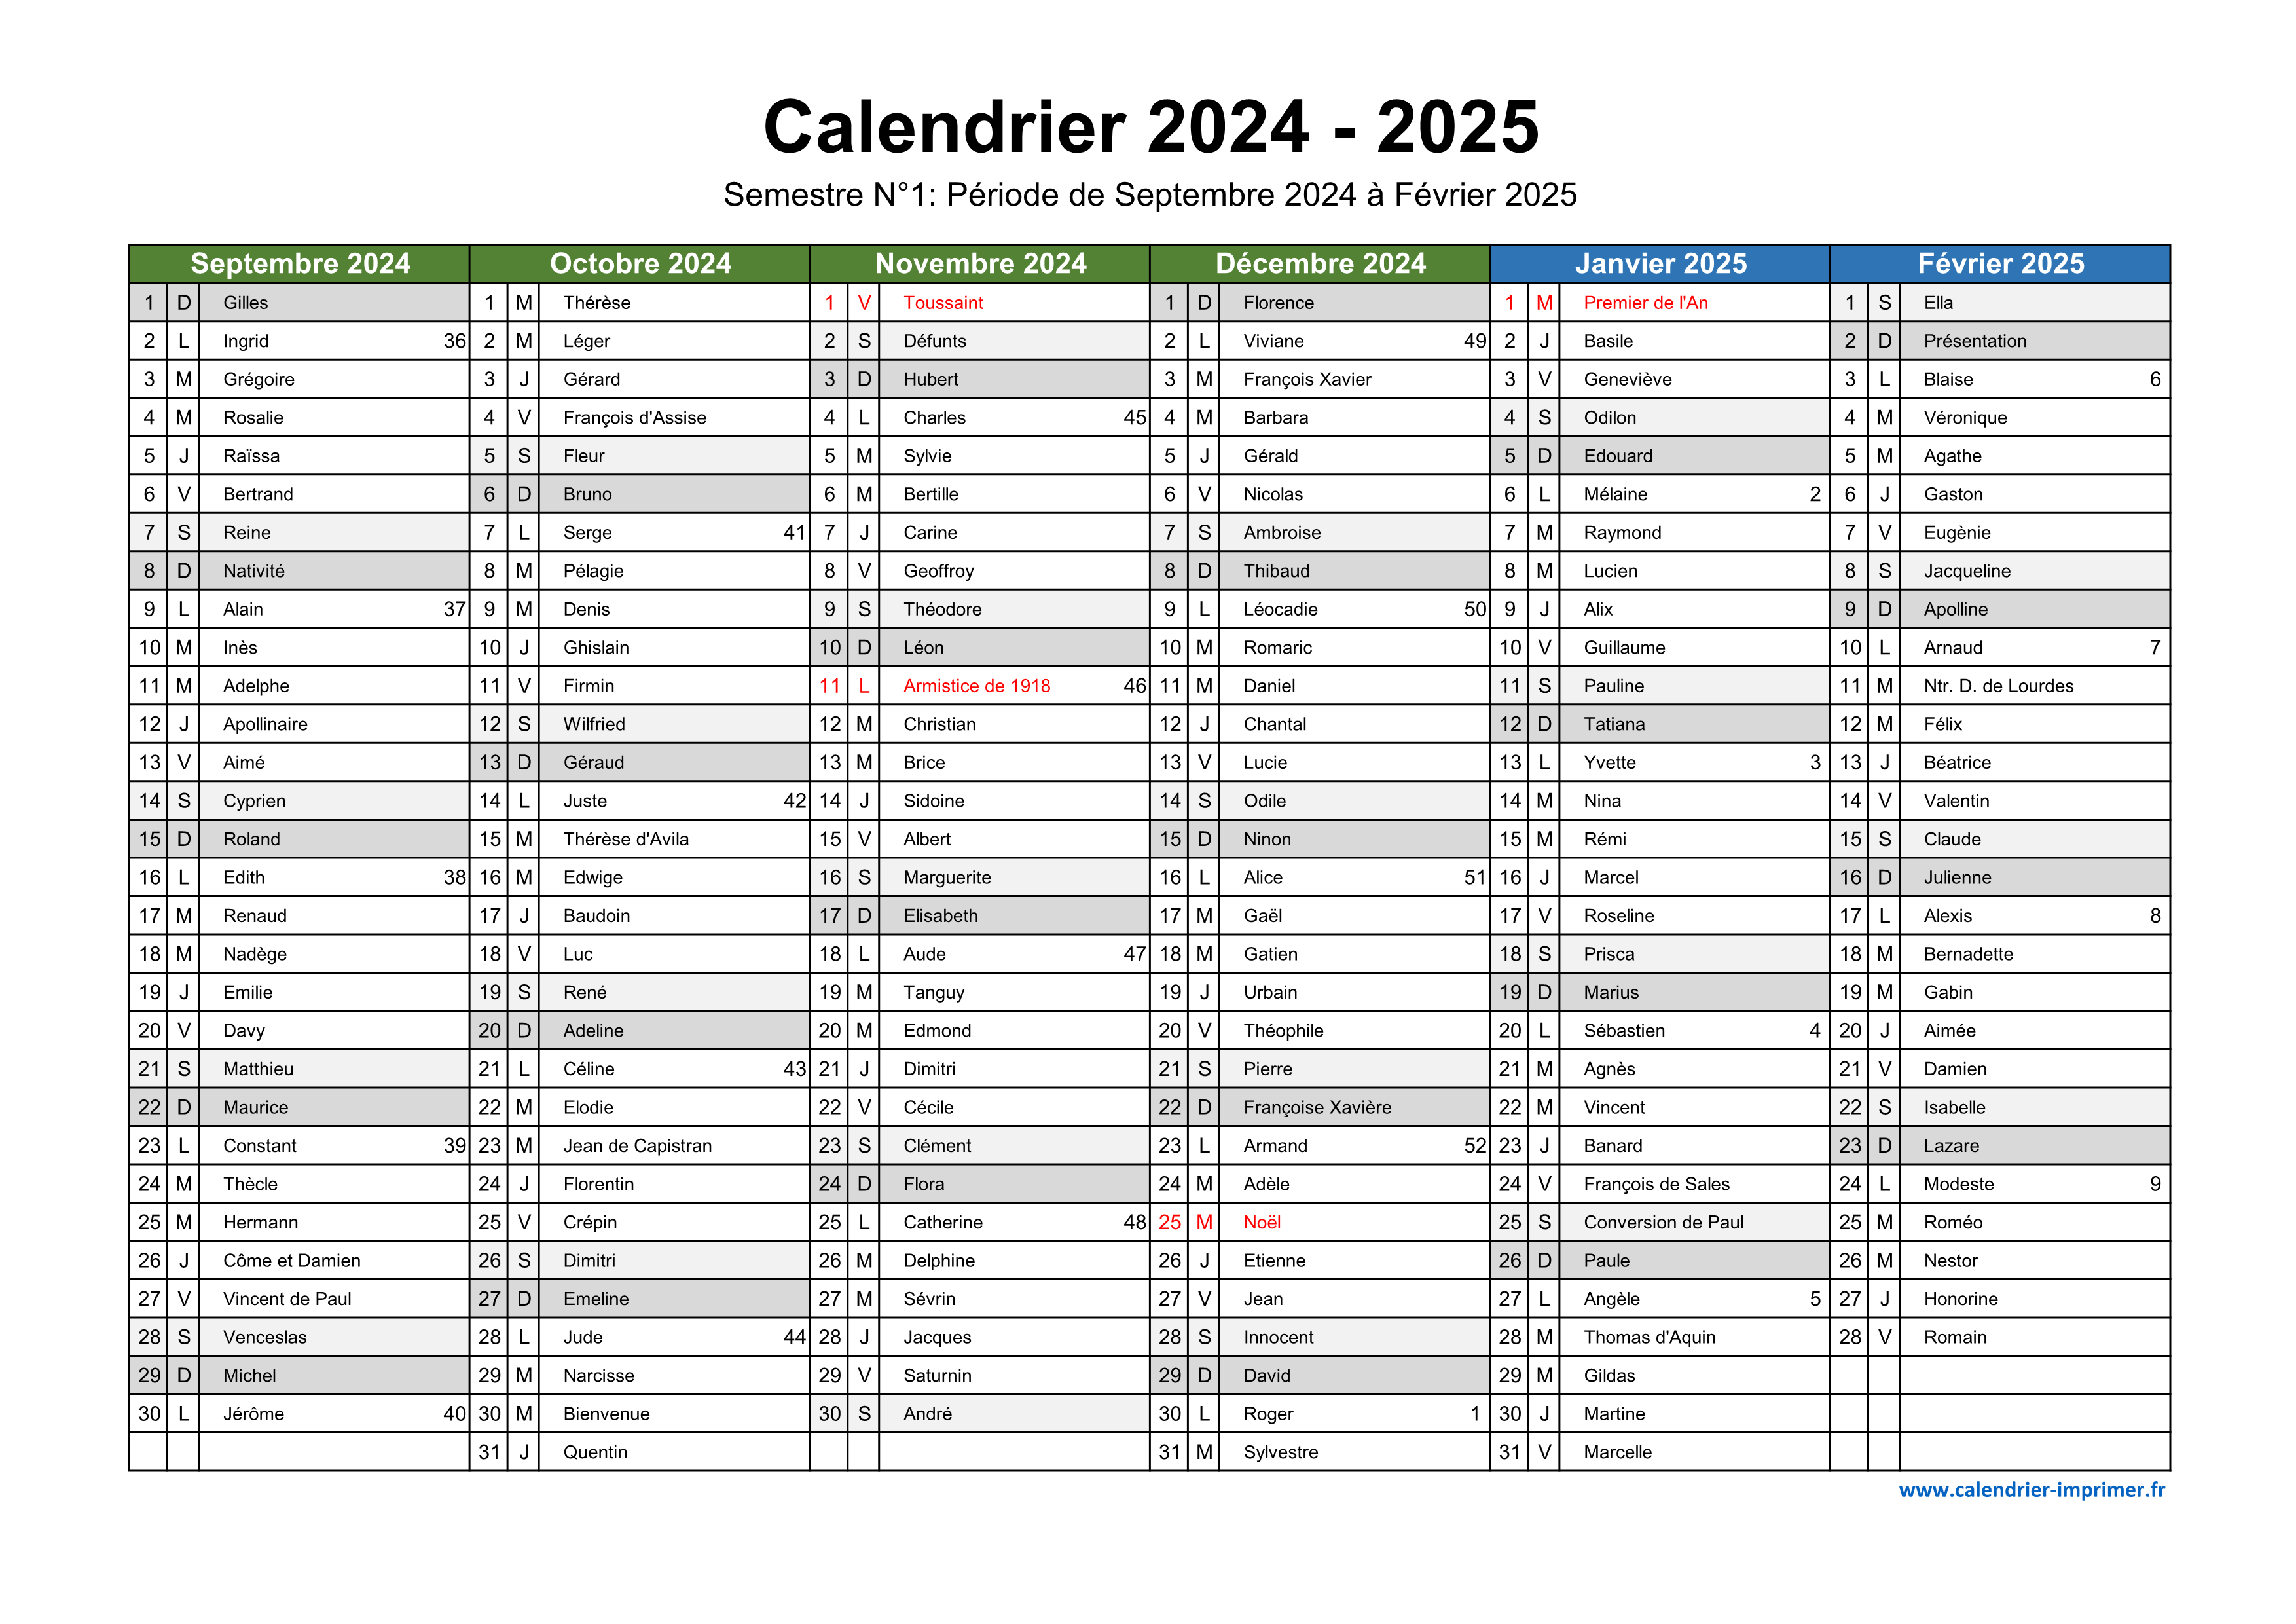  Hiverfilles Calendrier 2024 - 2025: Calendrier sur